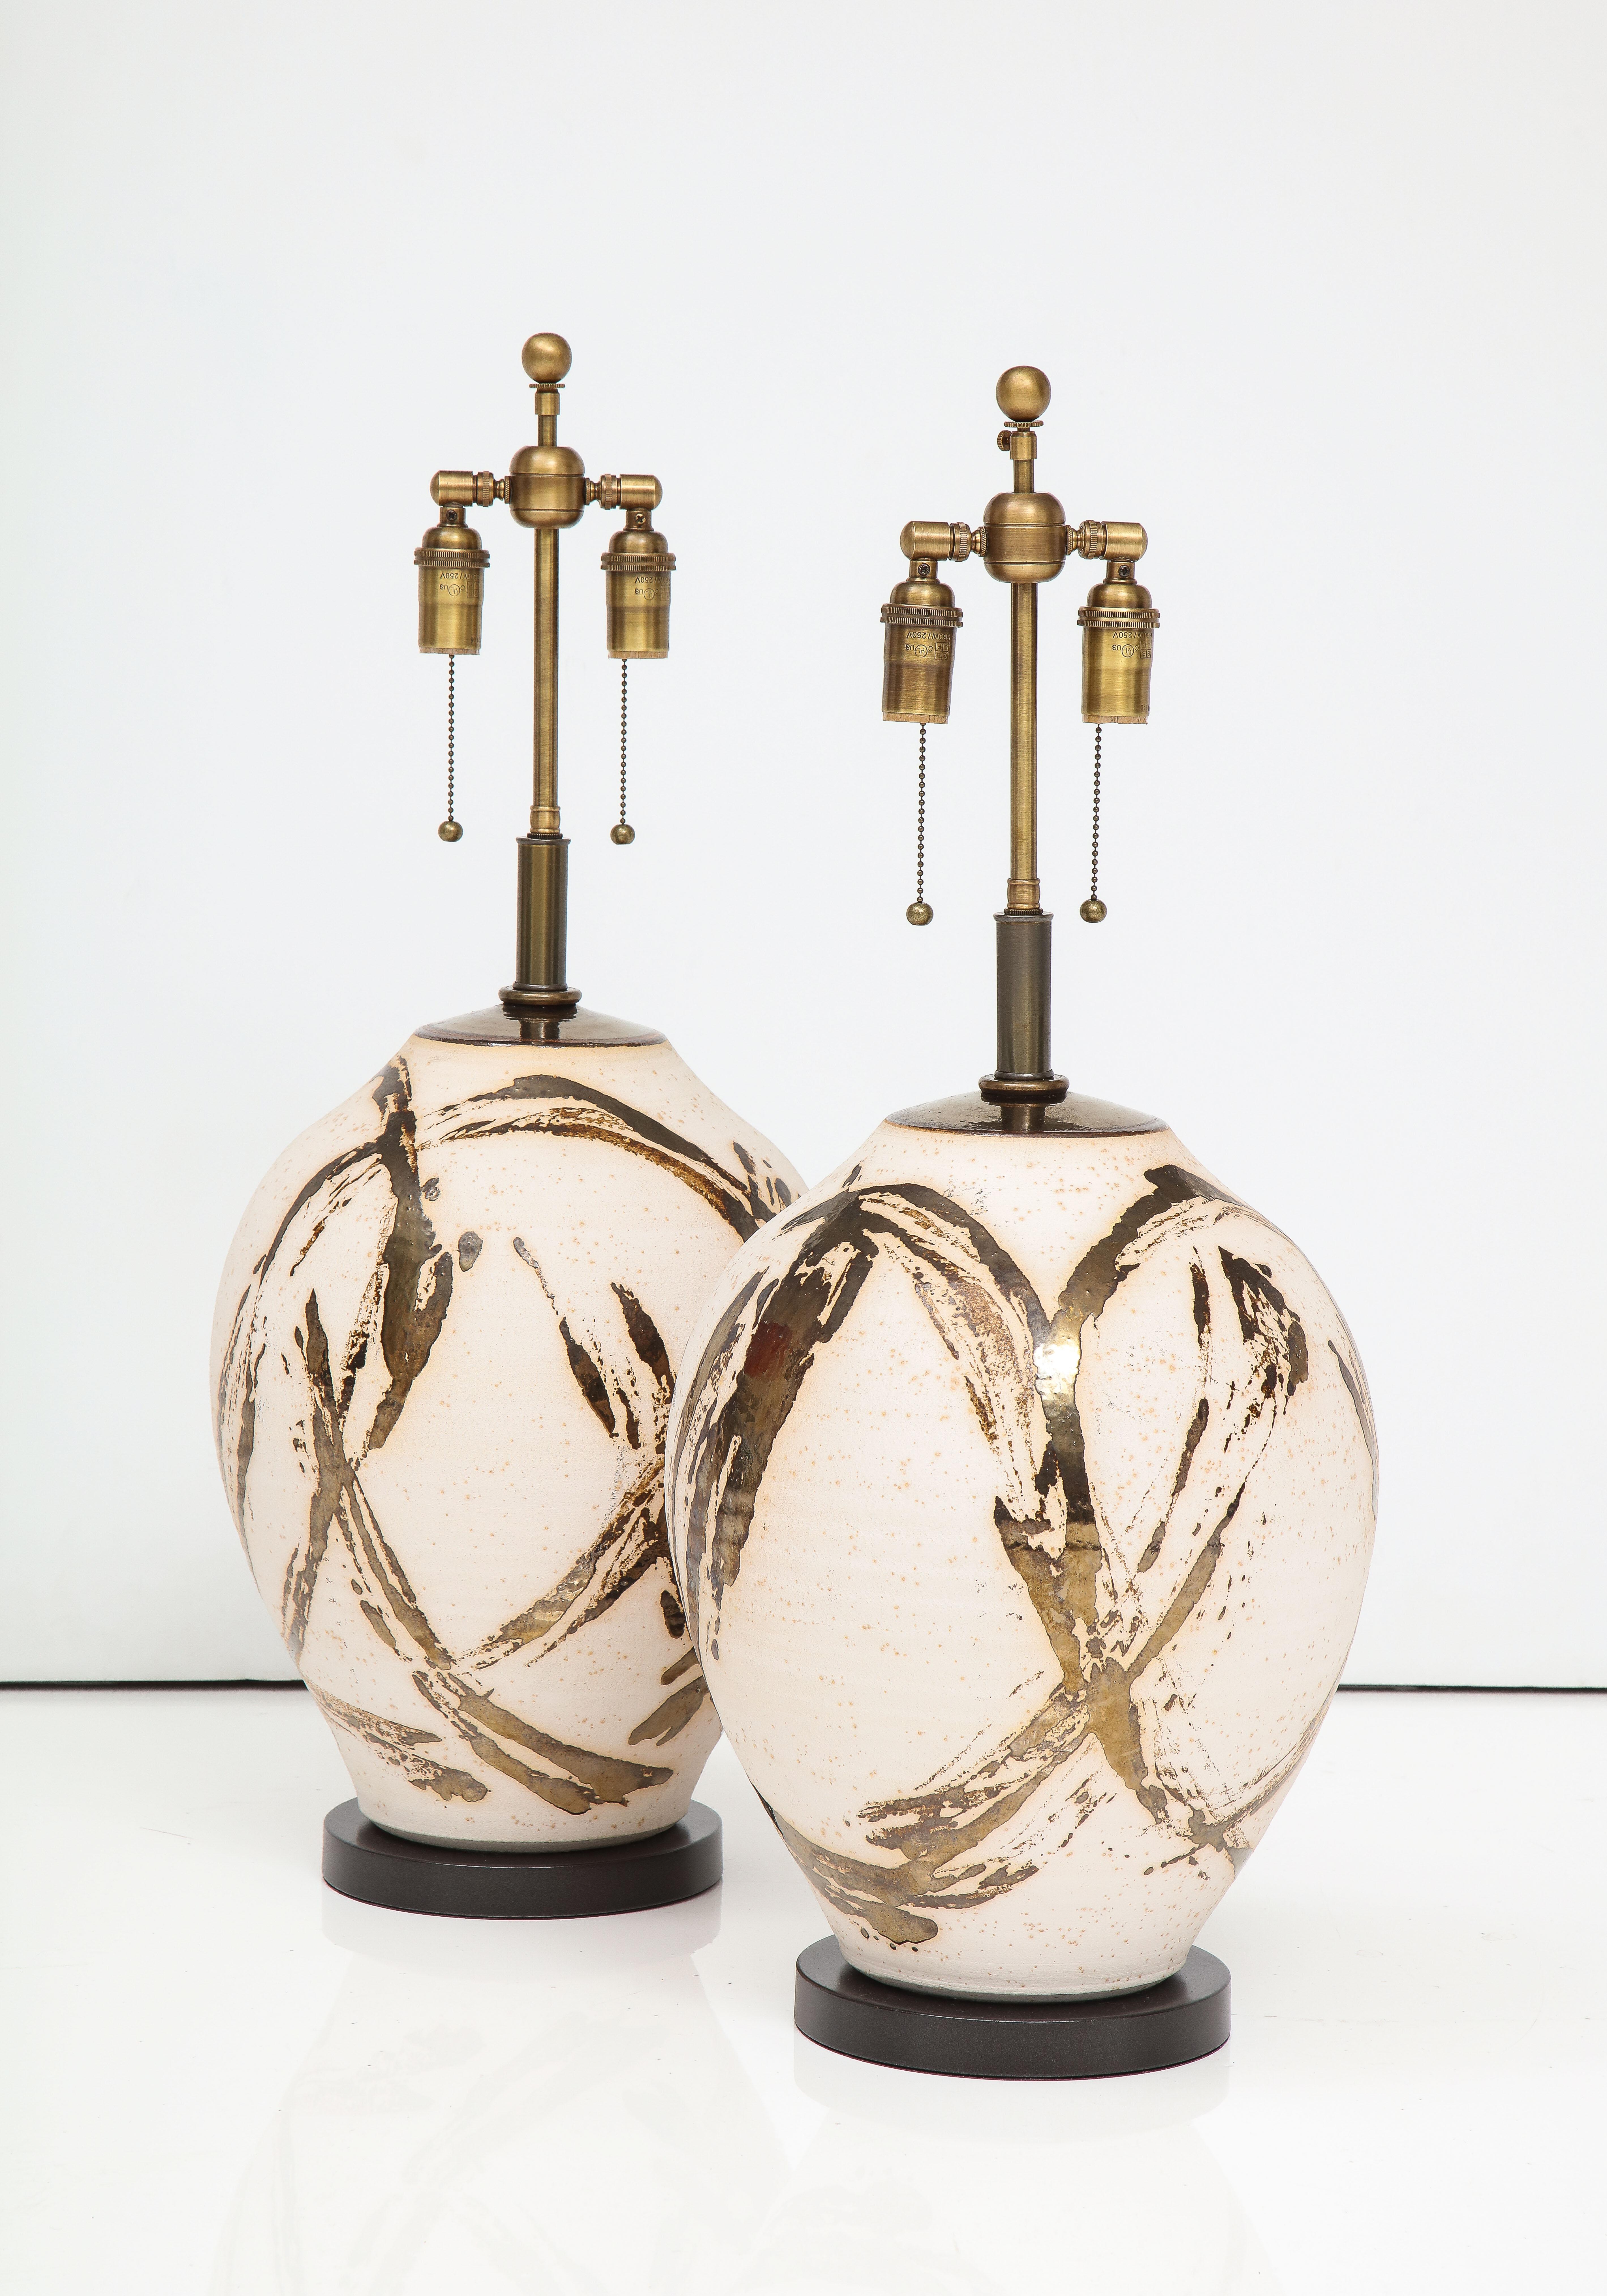 Großes Paar Raku Ware-Lampen, entworfen für eine Einrichtung von Steve Chase.
Die Lampen haben eine wunderbare Batik-Stil Metallic glasierte Oberfläche, und sie haben
wurde neu verkabelt mit verstellbaren Doppelclustern aus antiker Bronze und